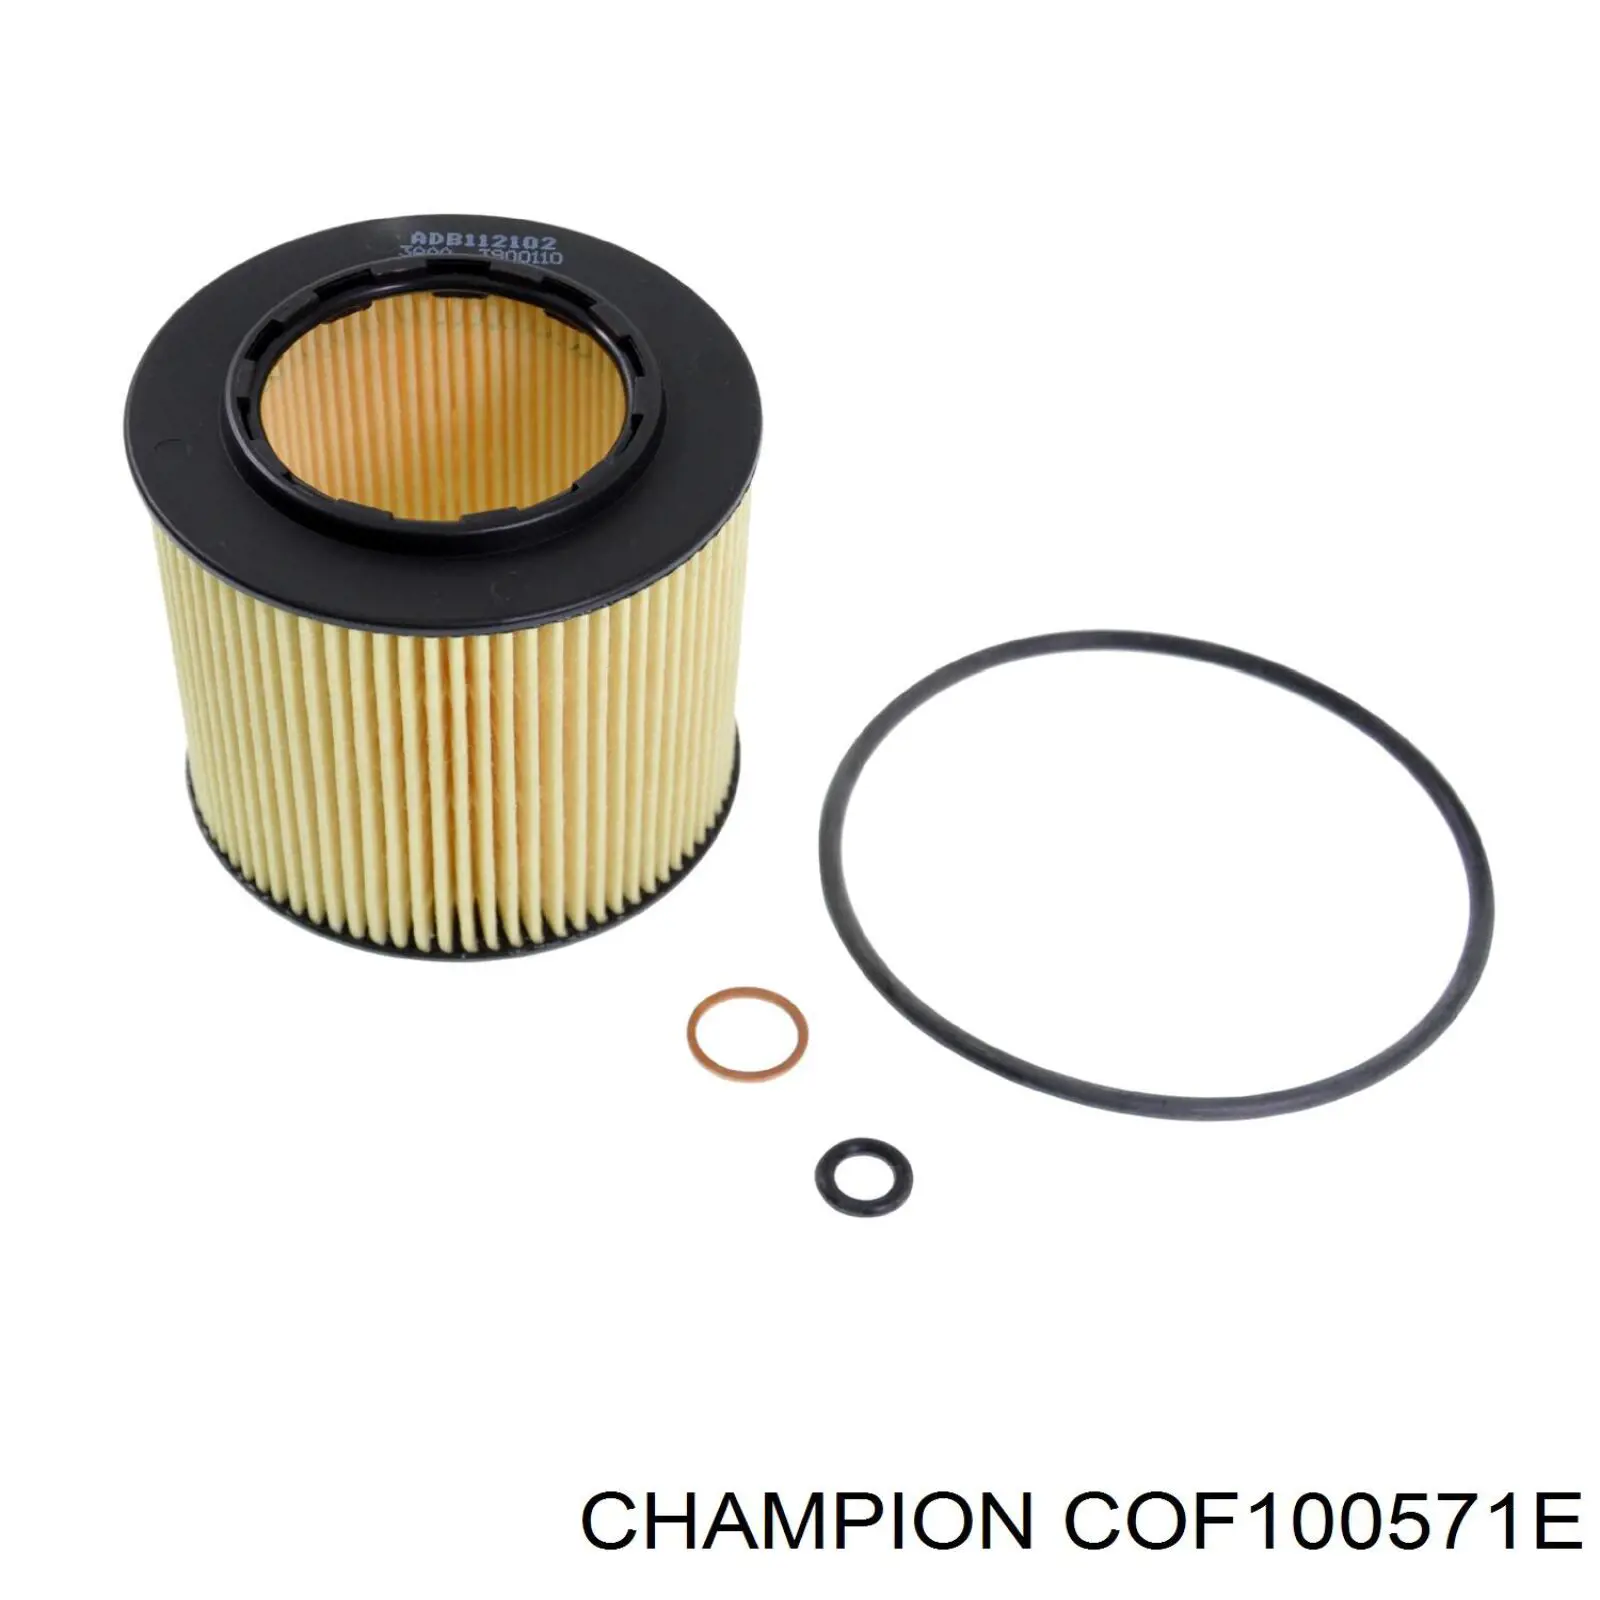 COF100571E Champion filtro de aceite